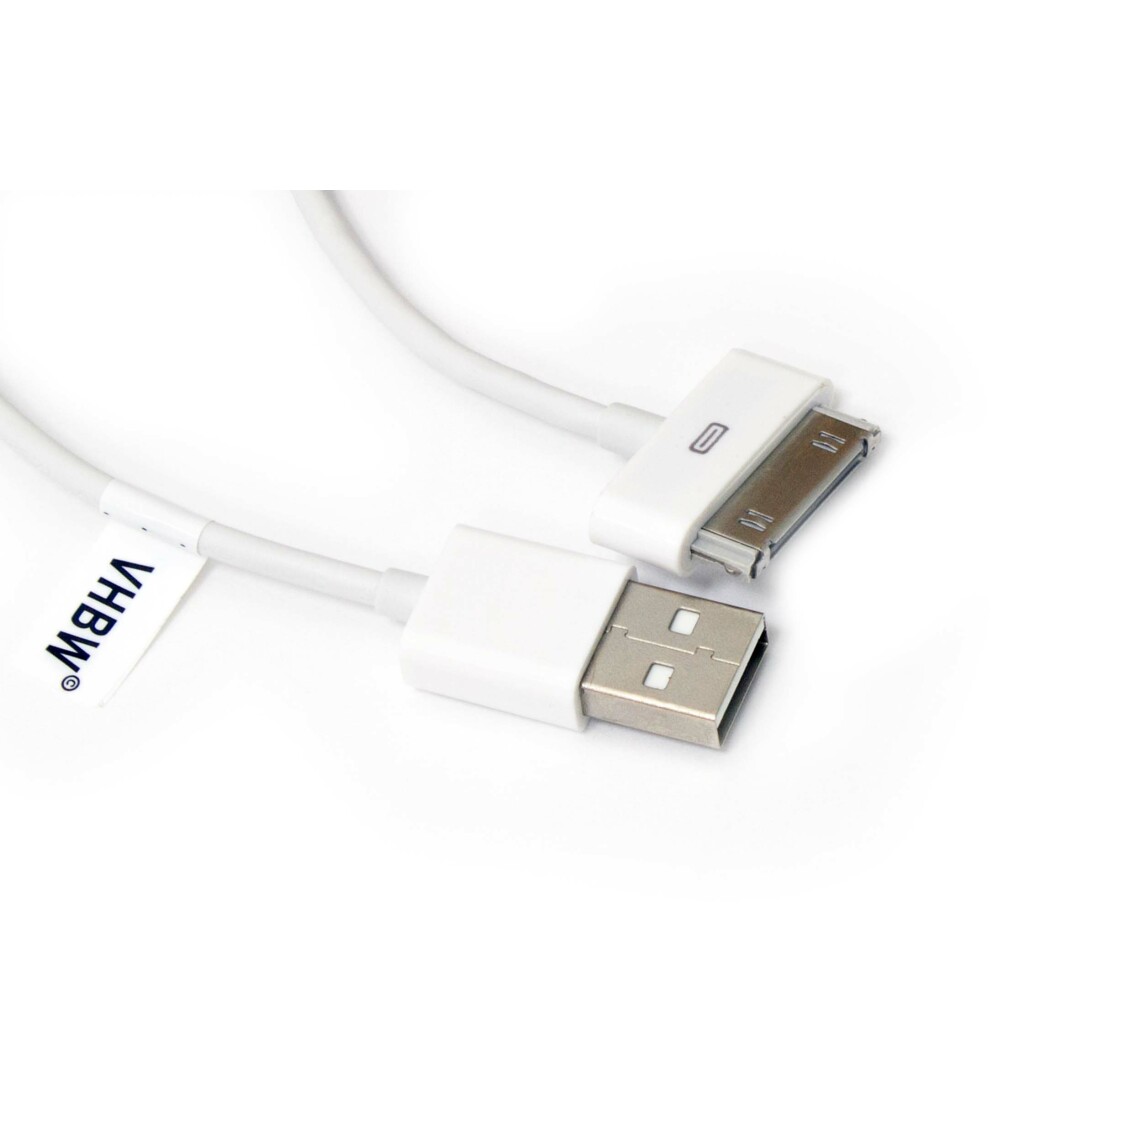 Vhbw - vhbw câble de données USB (type A sur iPod) compatible avec Apple iPod 6 Gen. (Classic) - A1238 - 160Gb lecteur MP3 - blanc - Alimentation modulaire